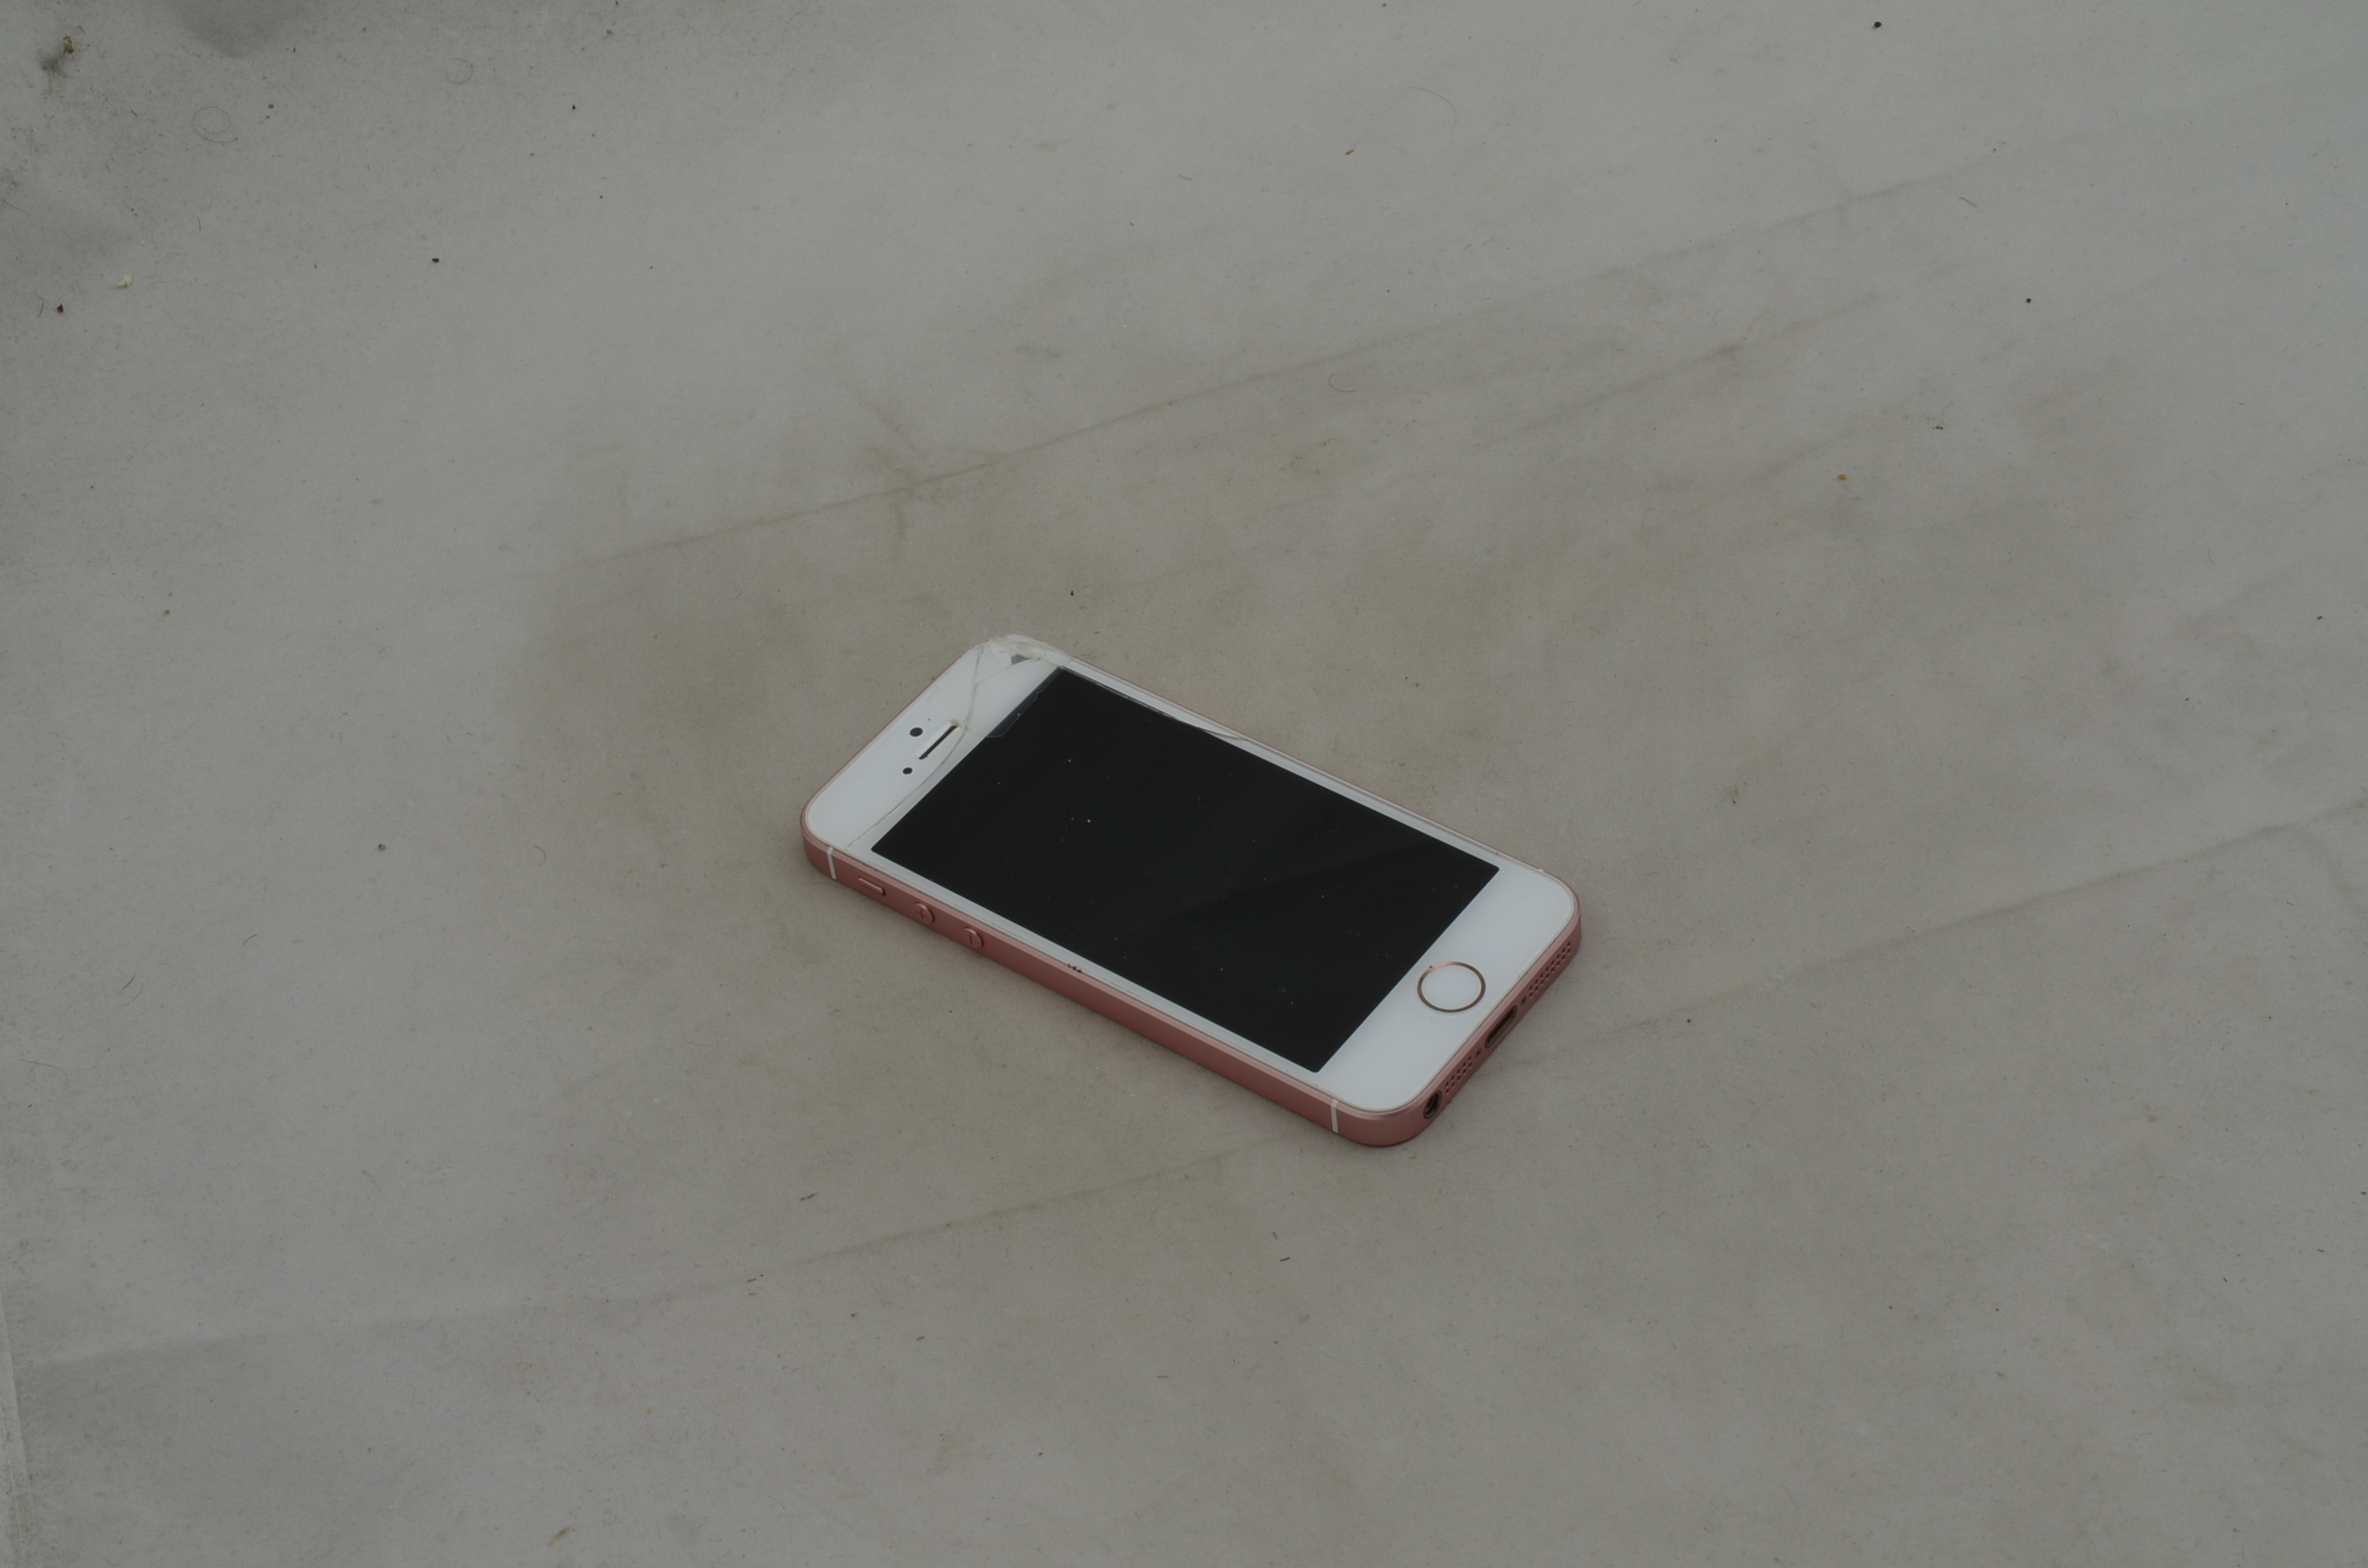 Produktbild von iPhone SE mit defektem Display